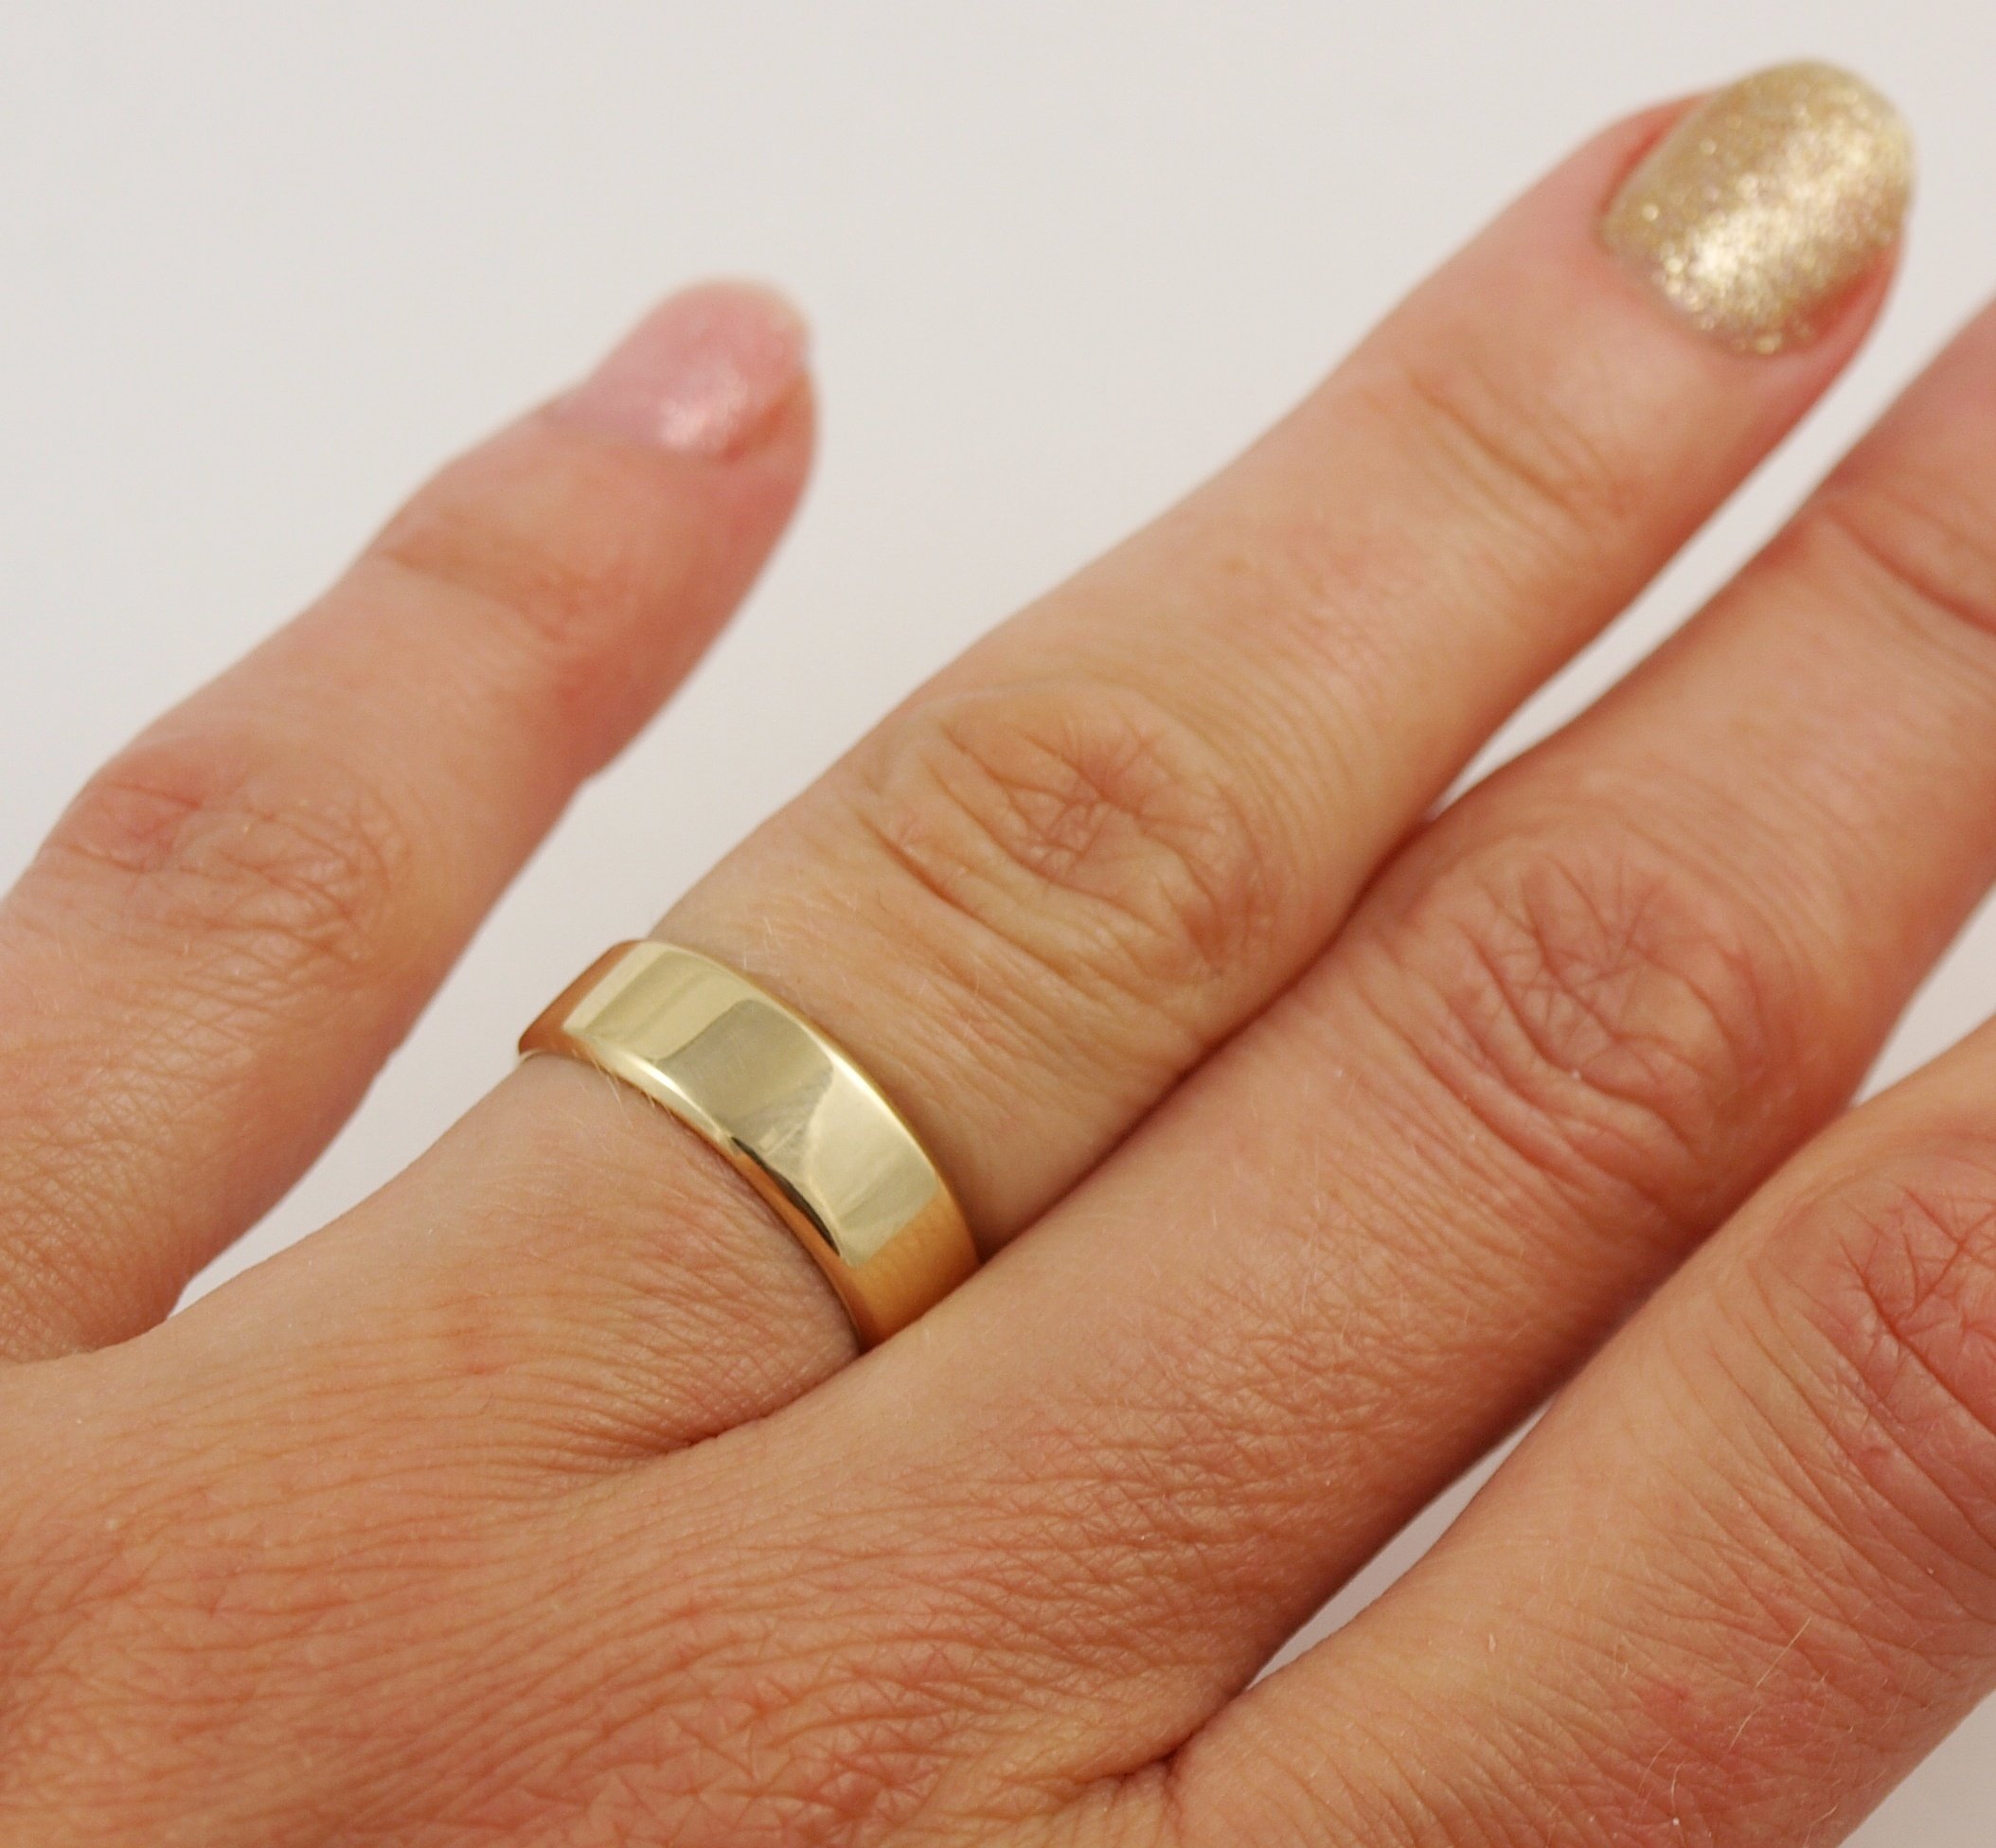 Обручальное кольцо 6 мм на руке